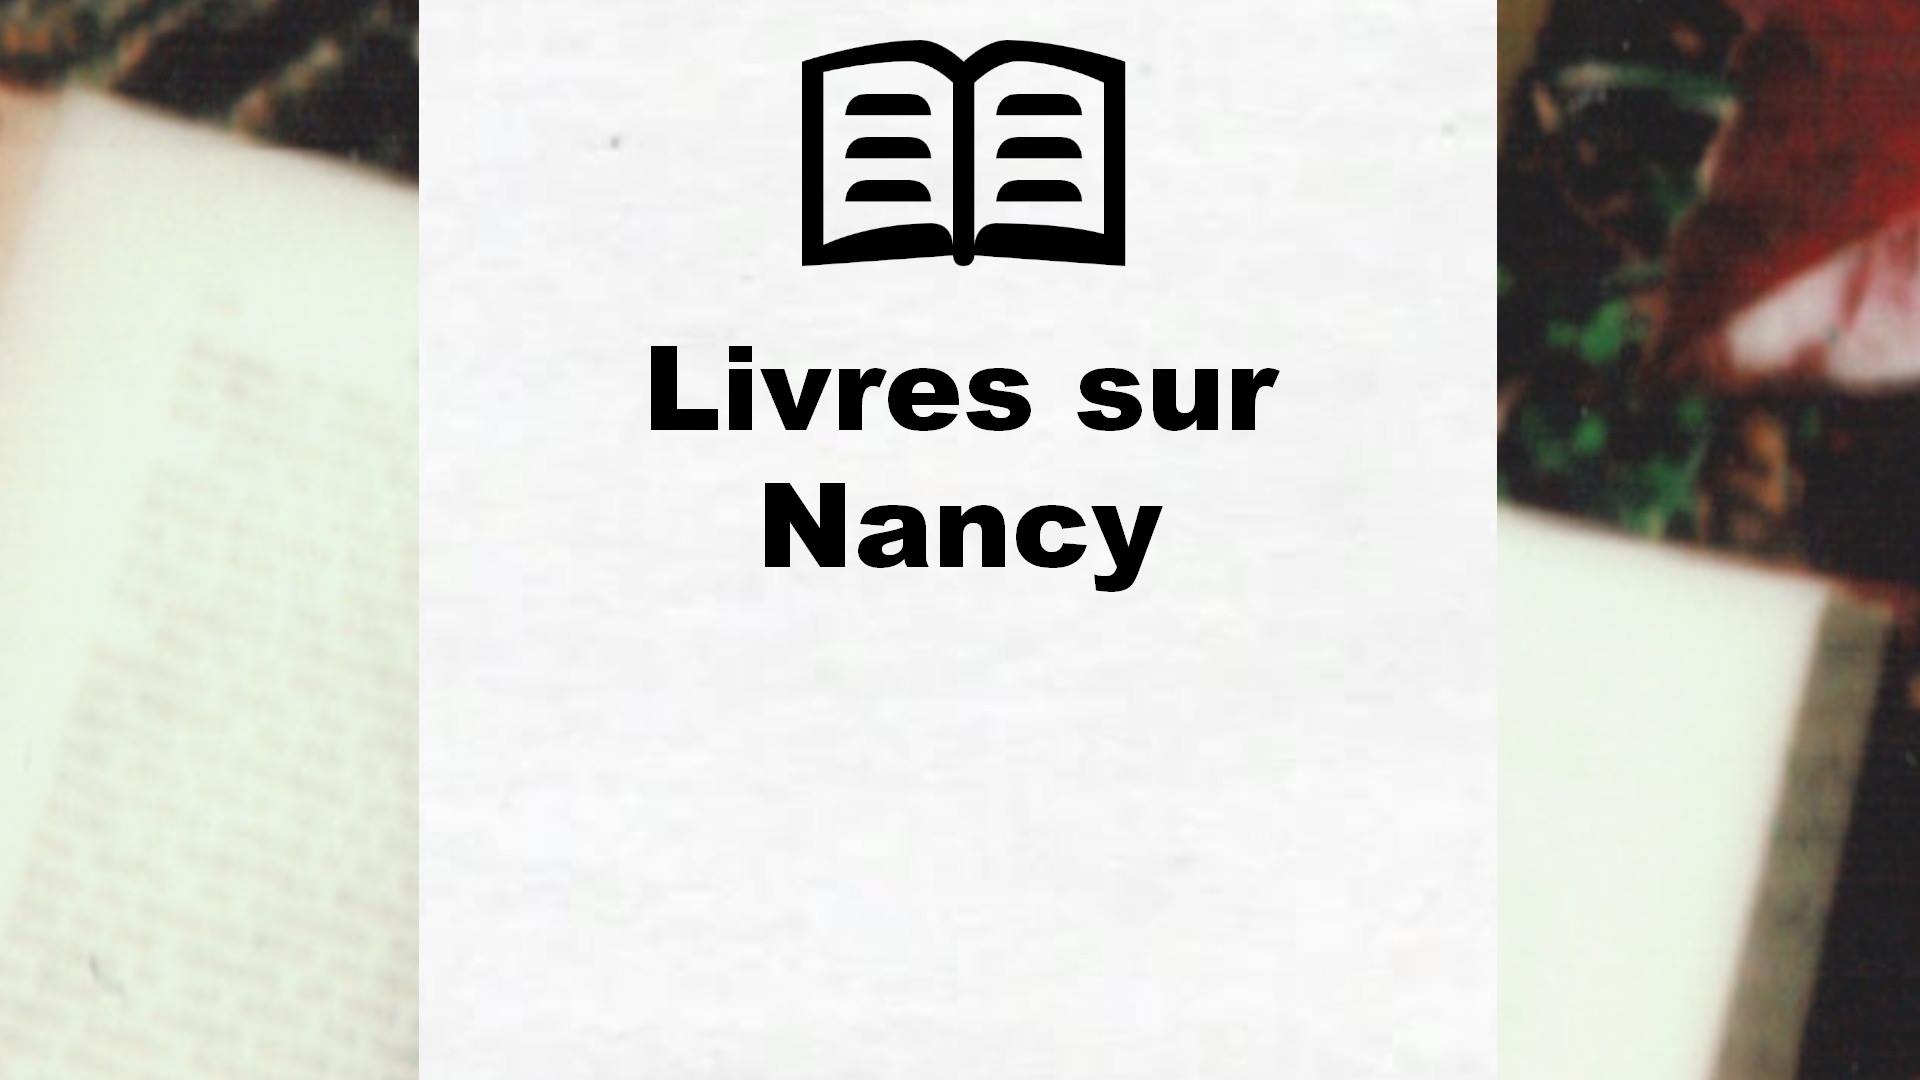 Livres sur Nancy